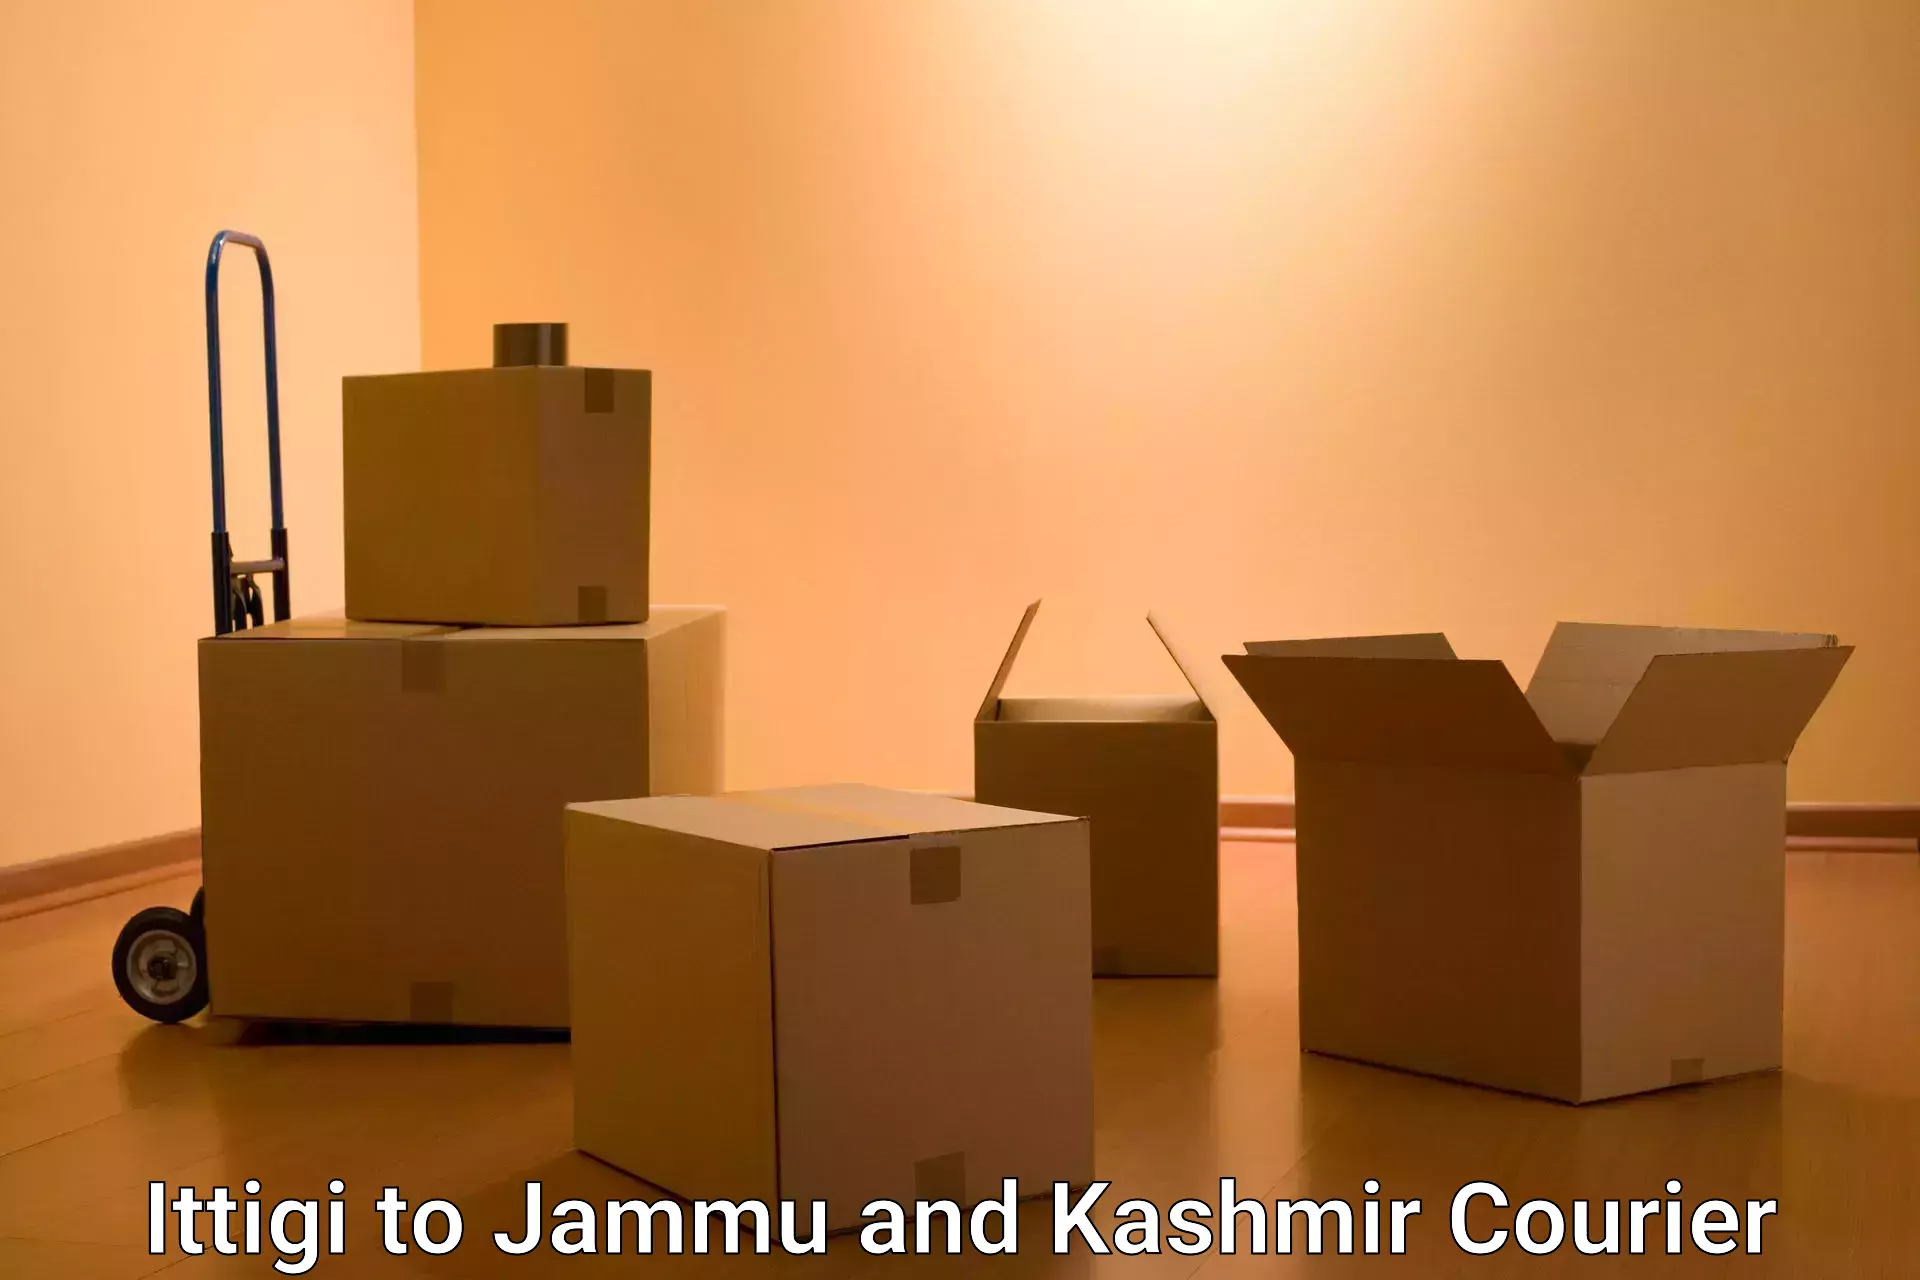 Express courier facilities Ittigi to Jammu and Kashmir